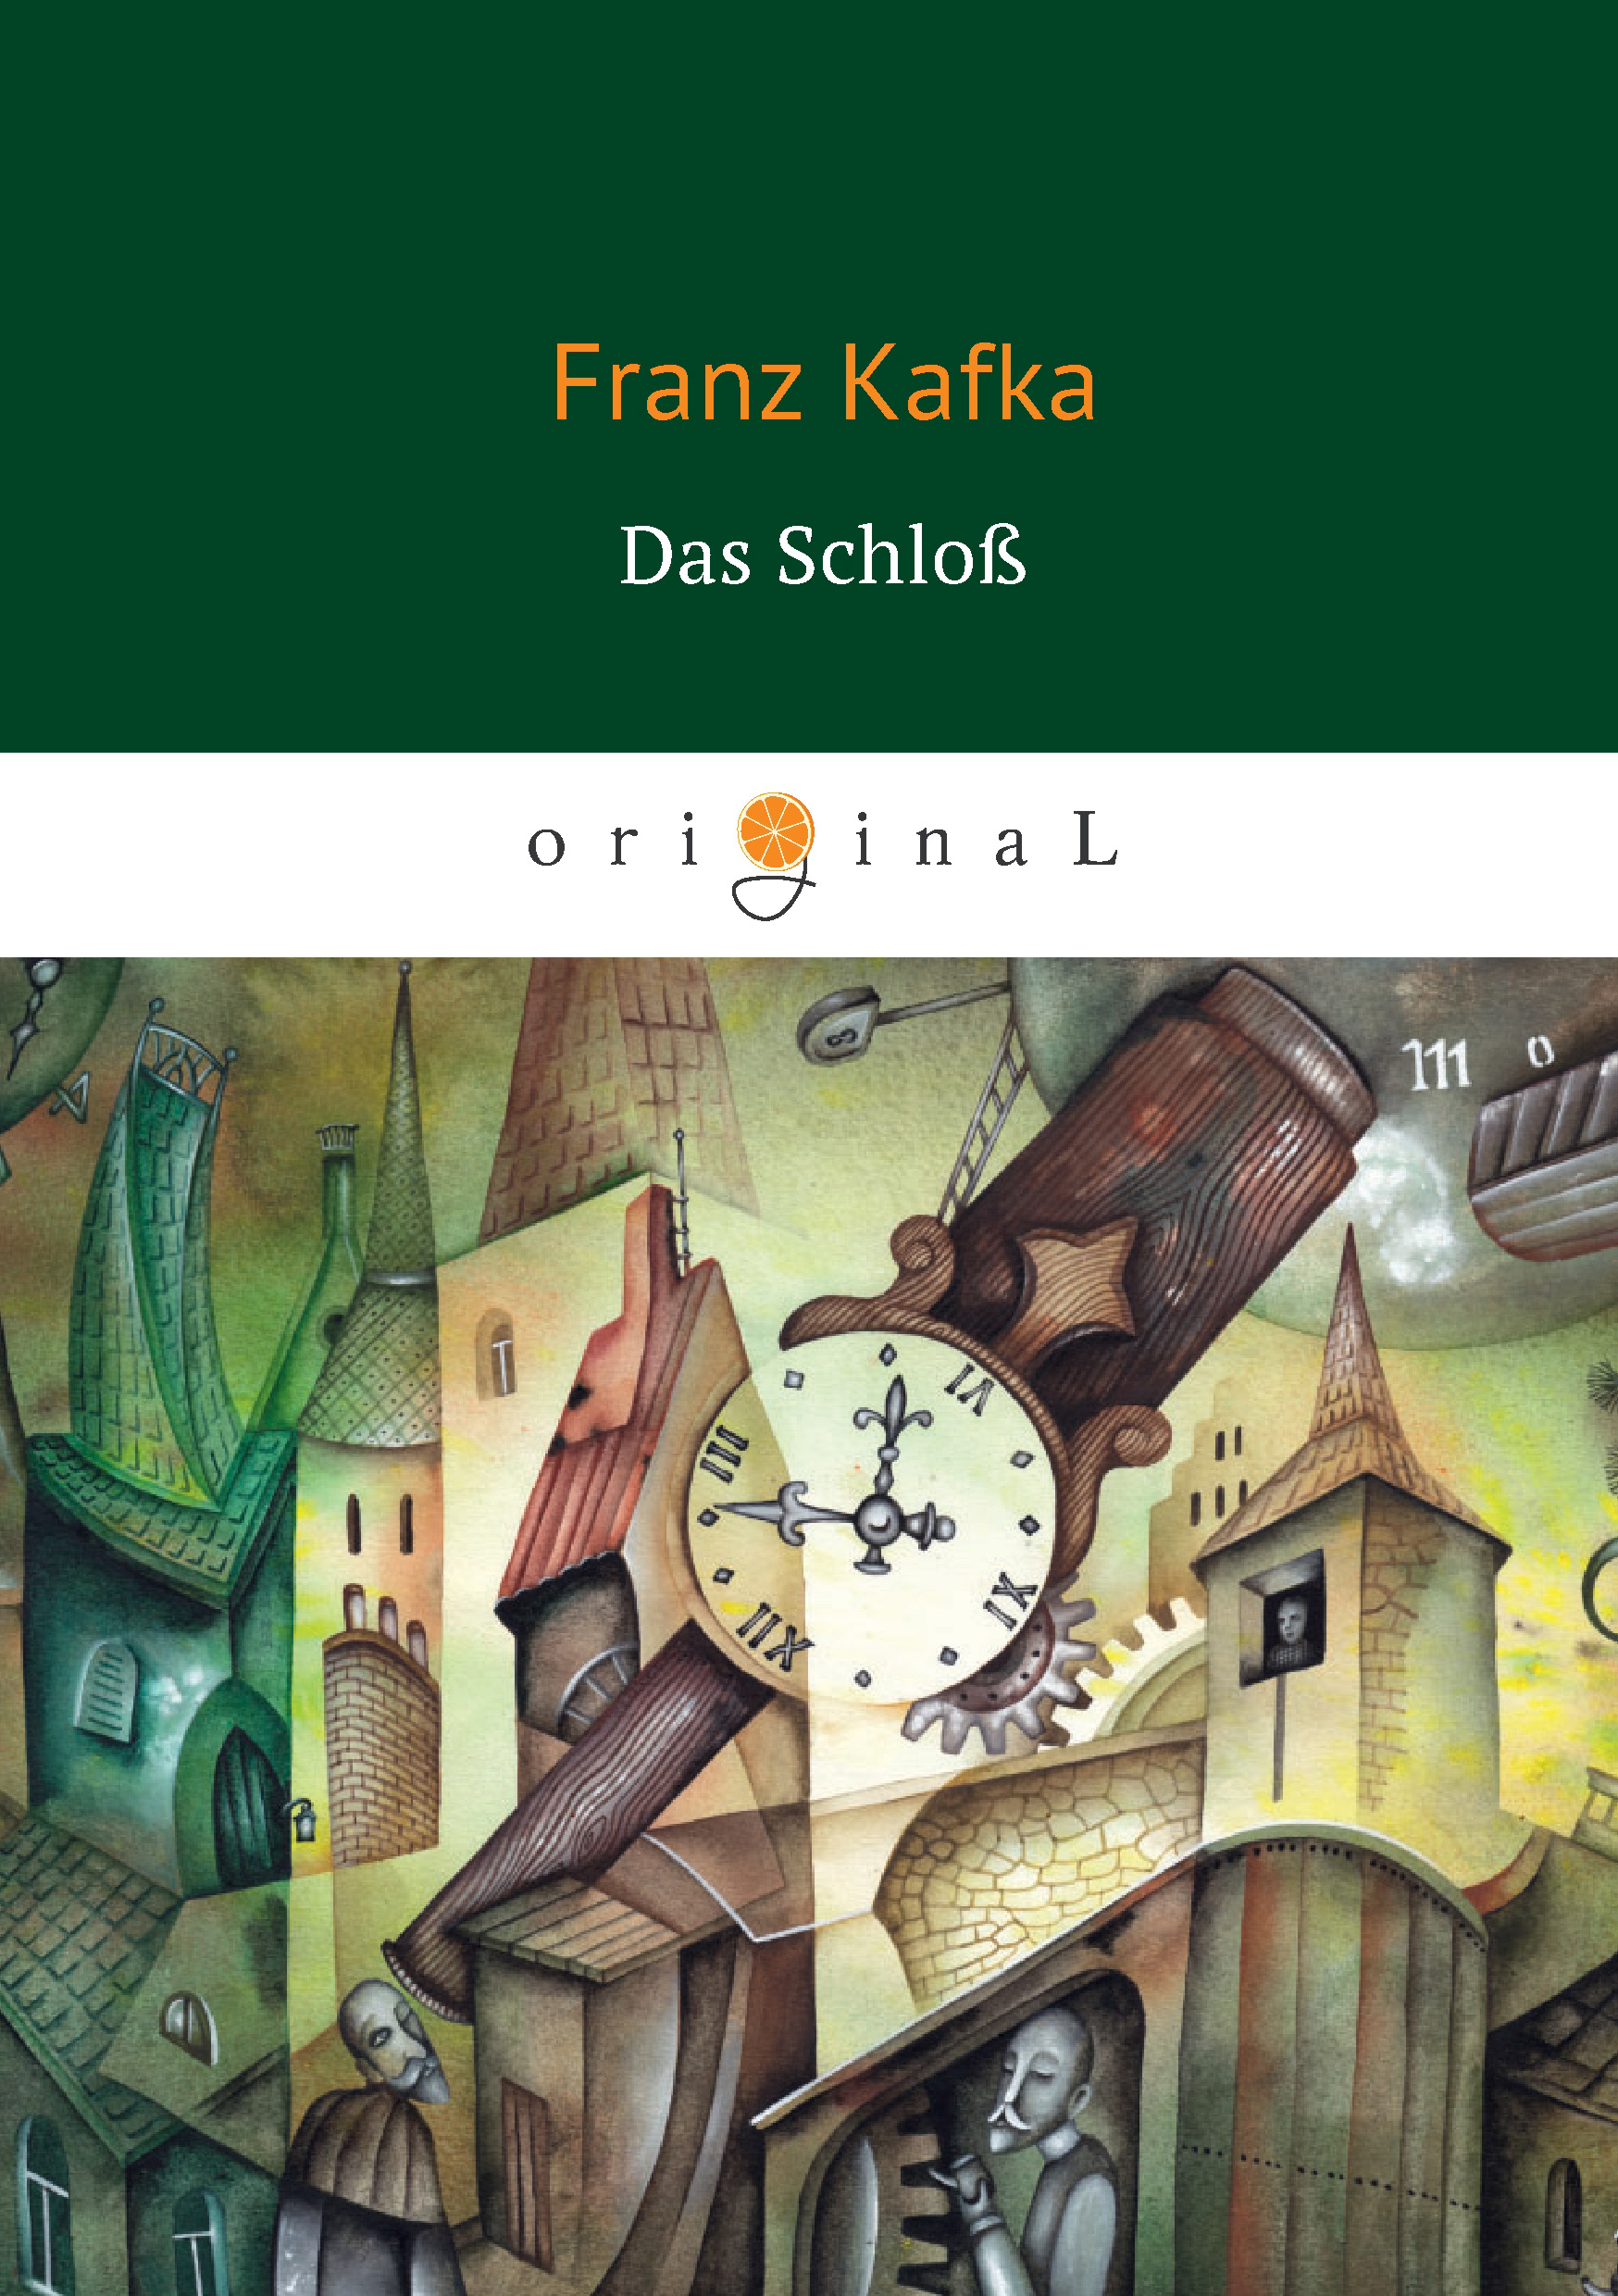 Книга Das Schloß из серии , созданная Франц Кафка, может относится к жанру Зарубежная классика, Литература 20 века. Стоимость электронной книги Das Schloß с идентификатором 33848113 составляет 199.00 руб.